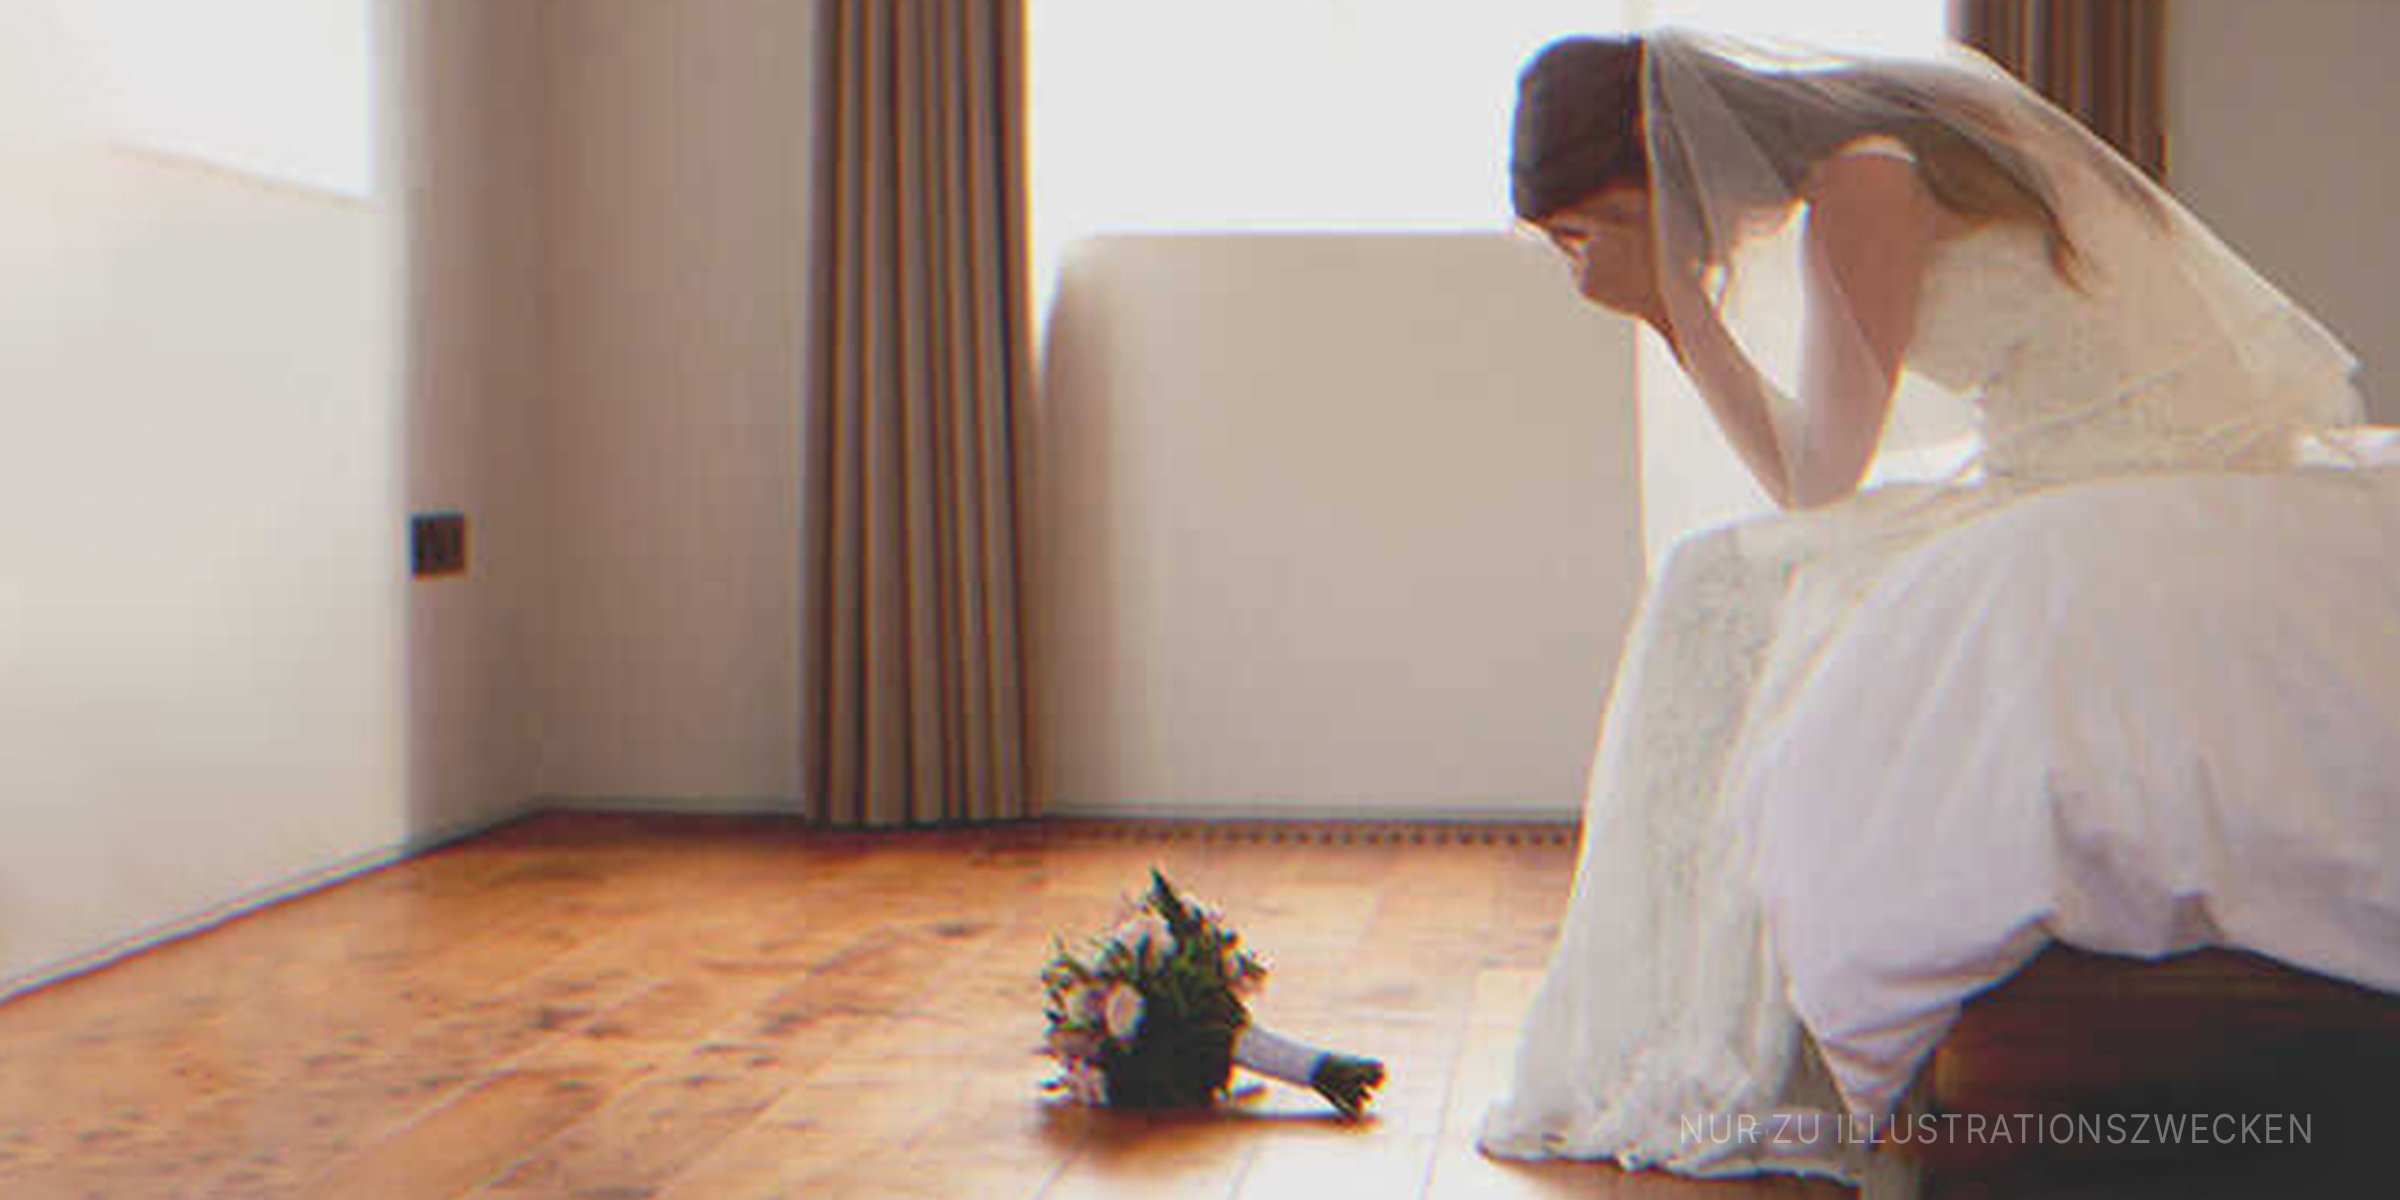 Die weinende Braut in ihrem Zimmer | Quelle: Shutterstock